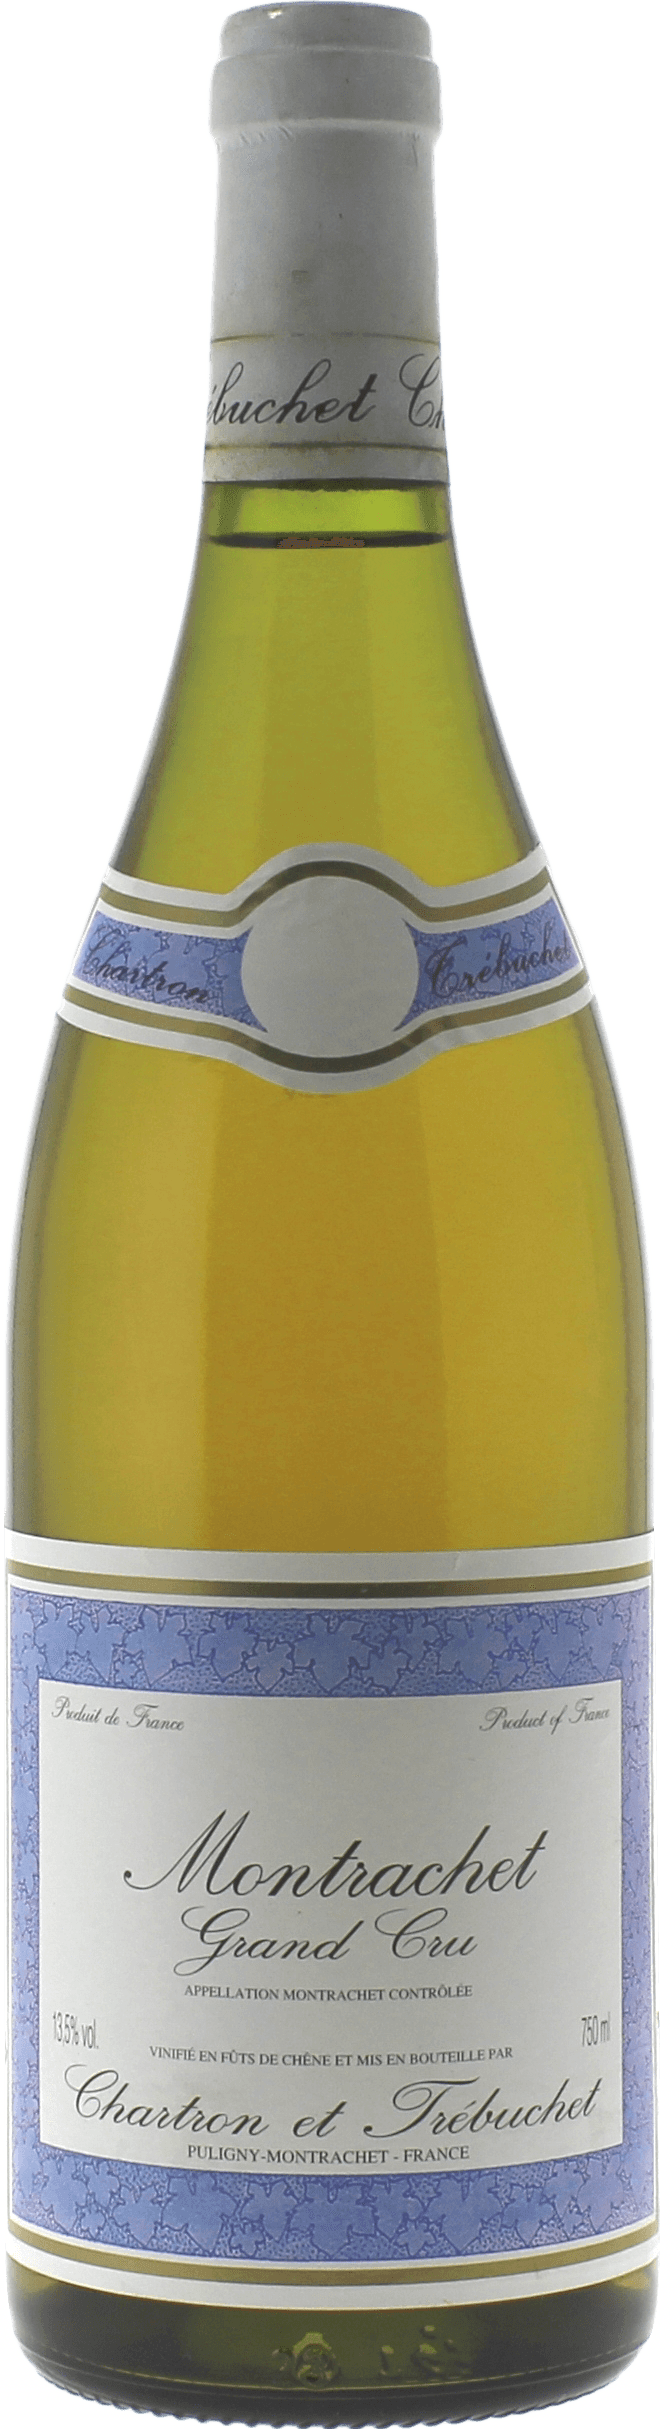 Montrachet chartron trbuchet 1996 Domaine CHARTRON Jean, Bourgogne blanc